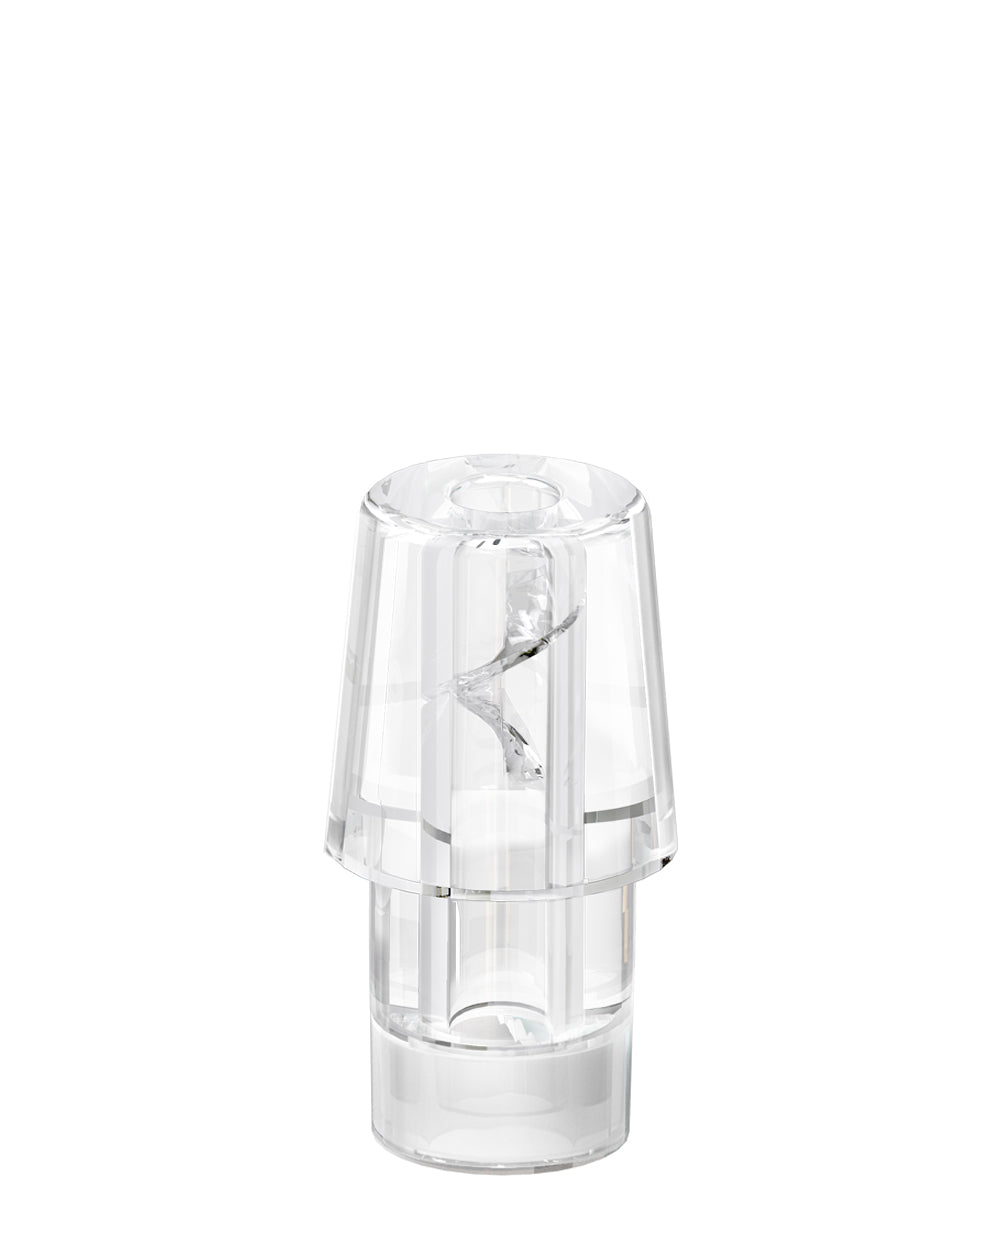 AVD | Stem Black Hemp Plastic Blend Rechargeable Disposable Vape Pen w/ Clear Vortex Mouthpiece | 1mL - 220 mAh  - 3